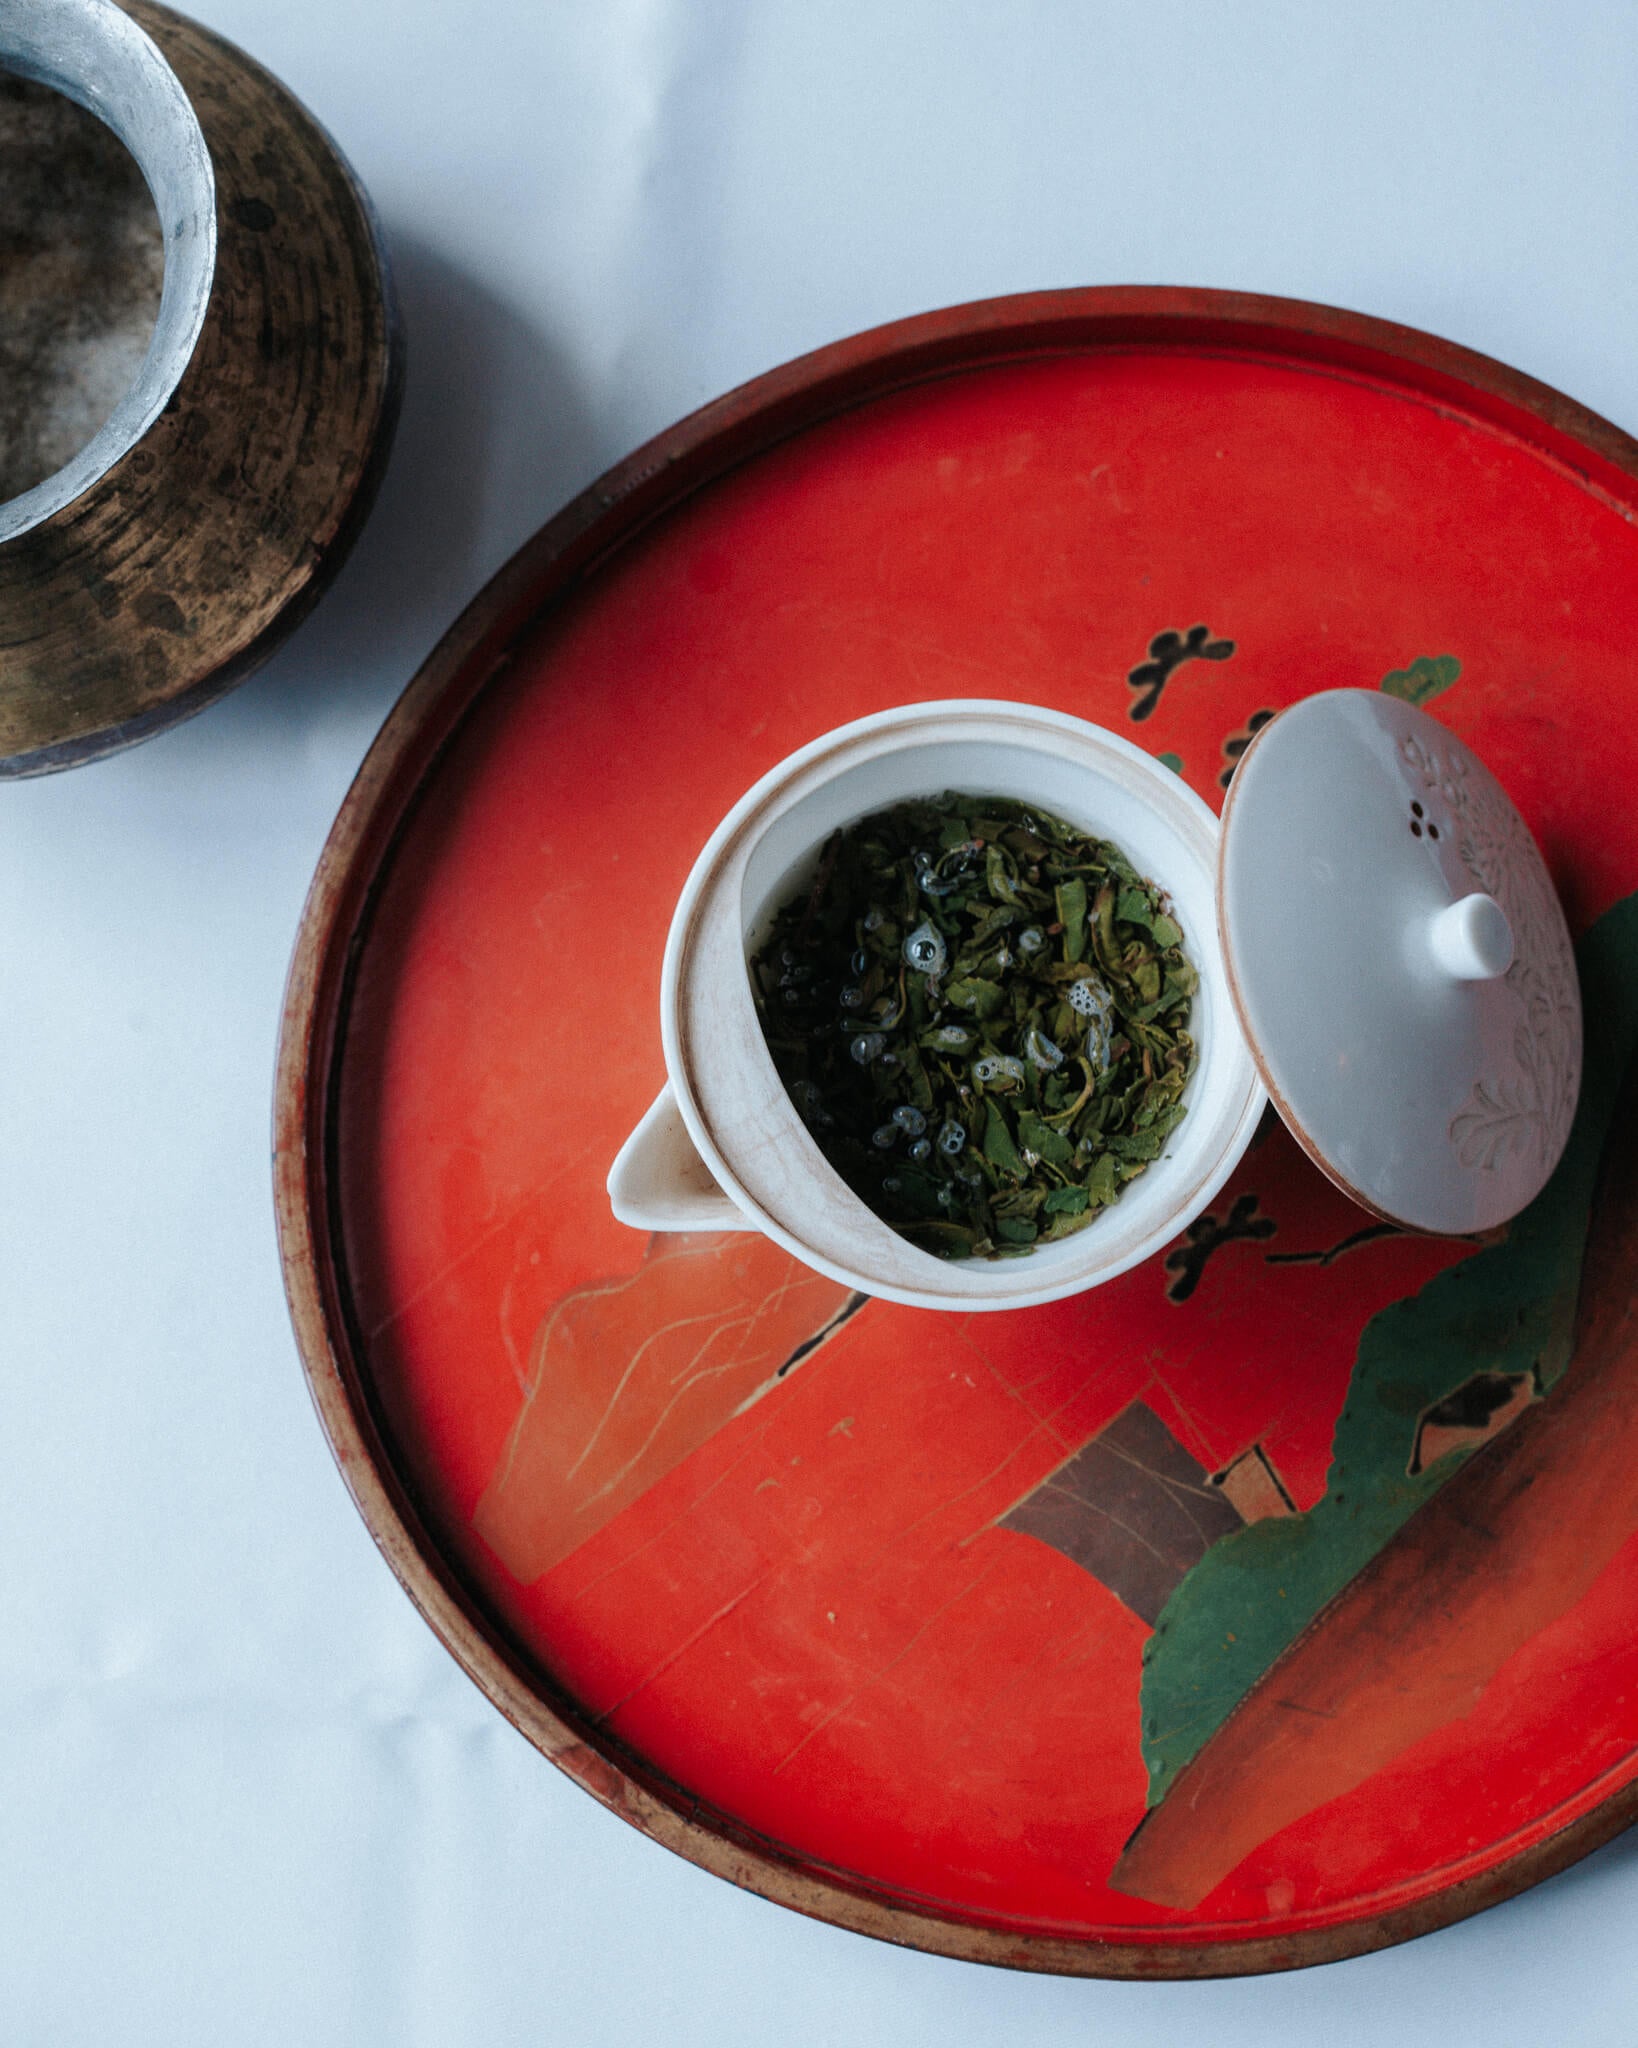 ふうしゅん 五ヶ瀬 萎凋（微発酵）釜炒り緑茶 by 茶の香クラフトティーペアリングス